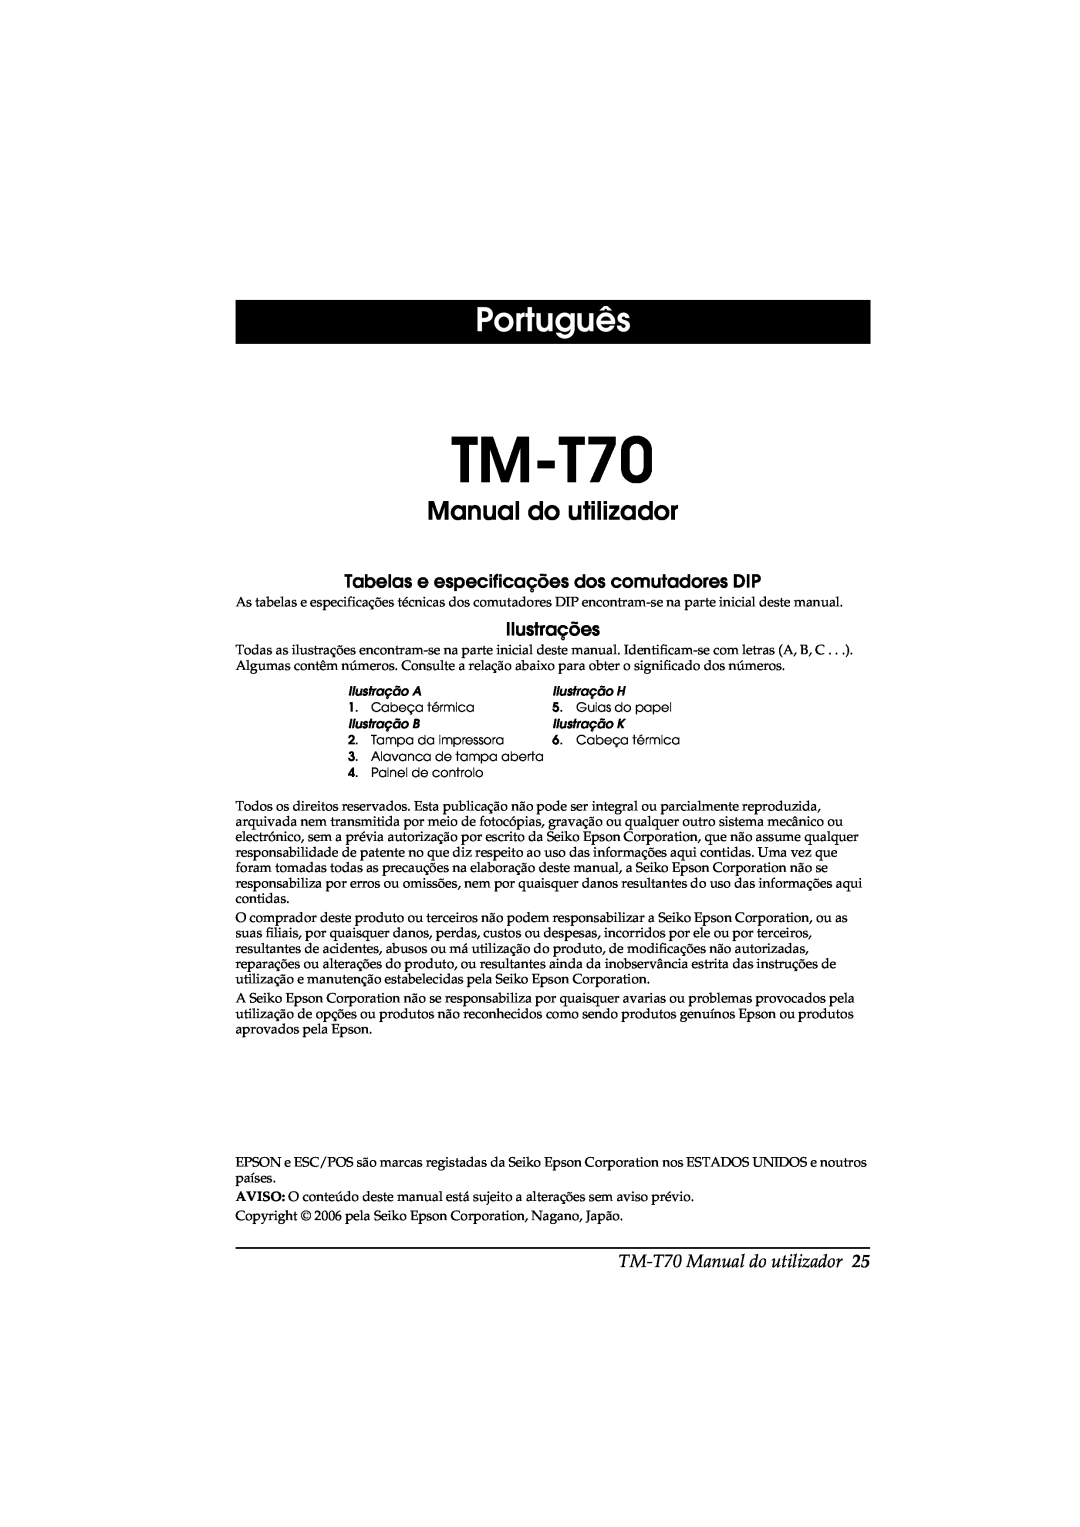 Seiko Group TM-T70 user manual Português, Manual do utilizador, Tabelas e especificações dos comutadores DIP, Ilustrações 